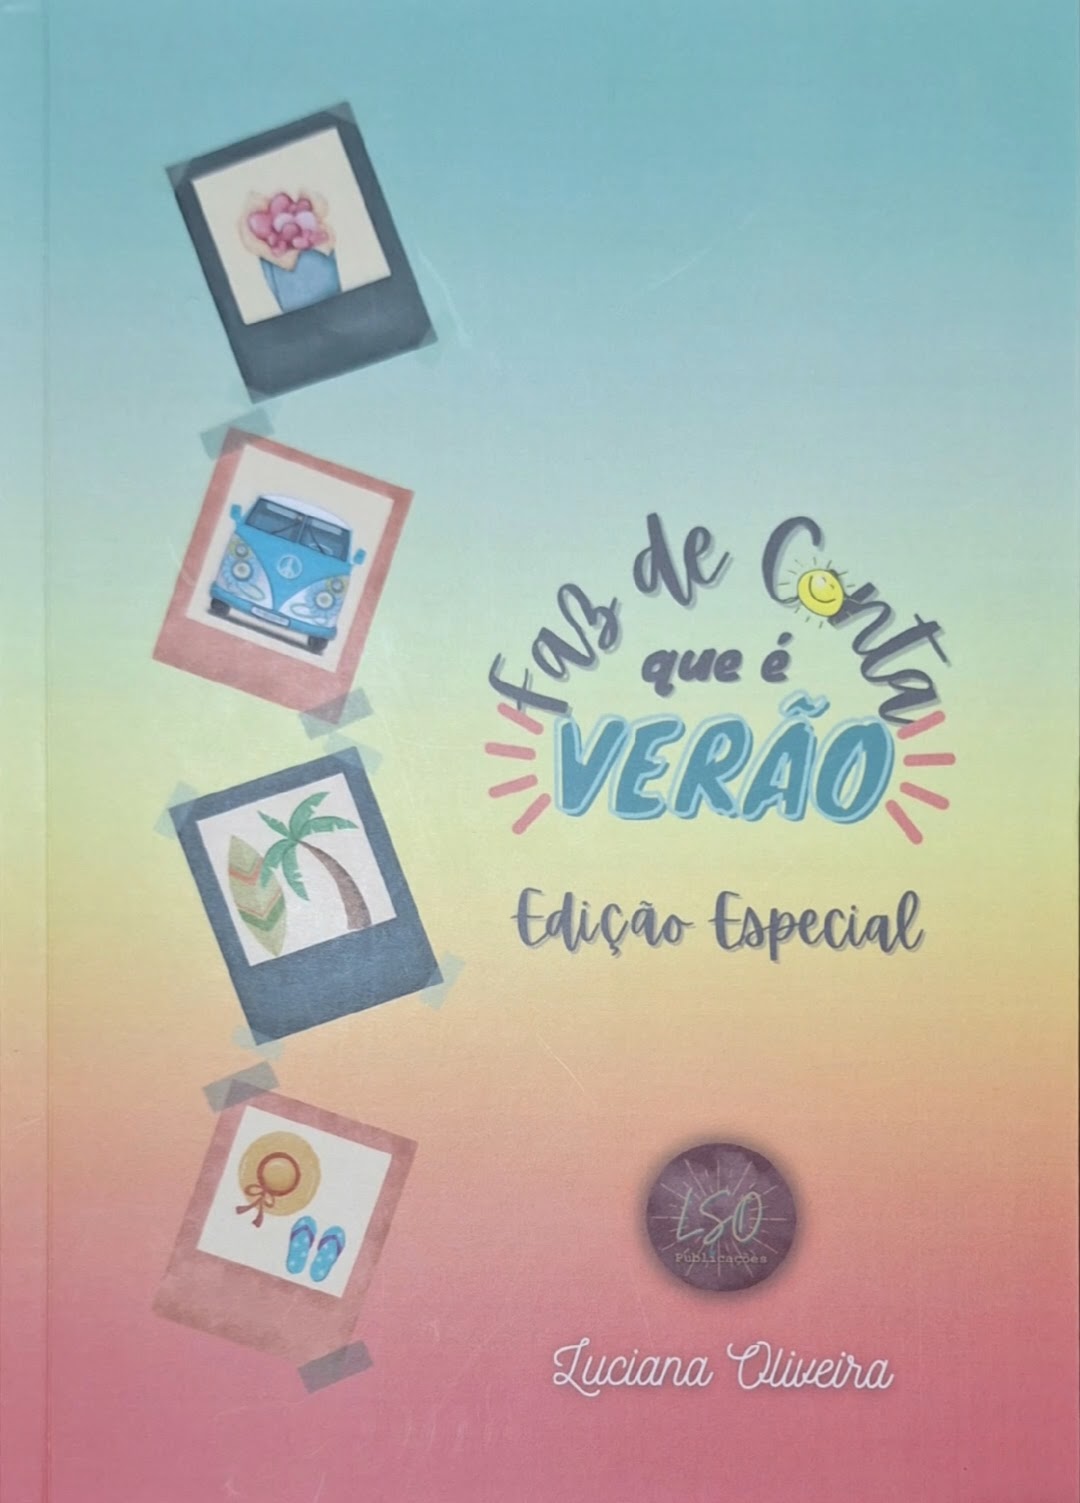 Capa do livro"Faz de conta que é verão" de Luciana Oliveira, pela LSO Publicações